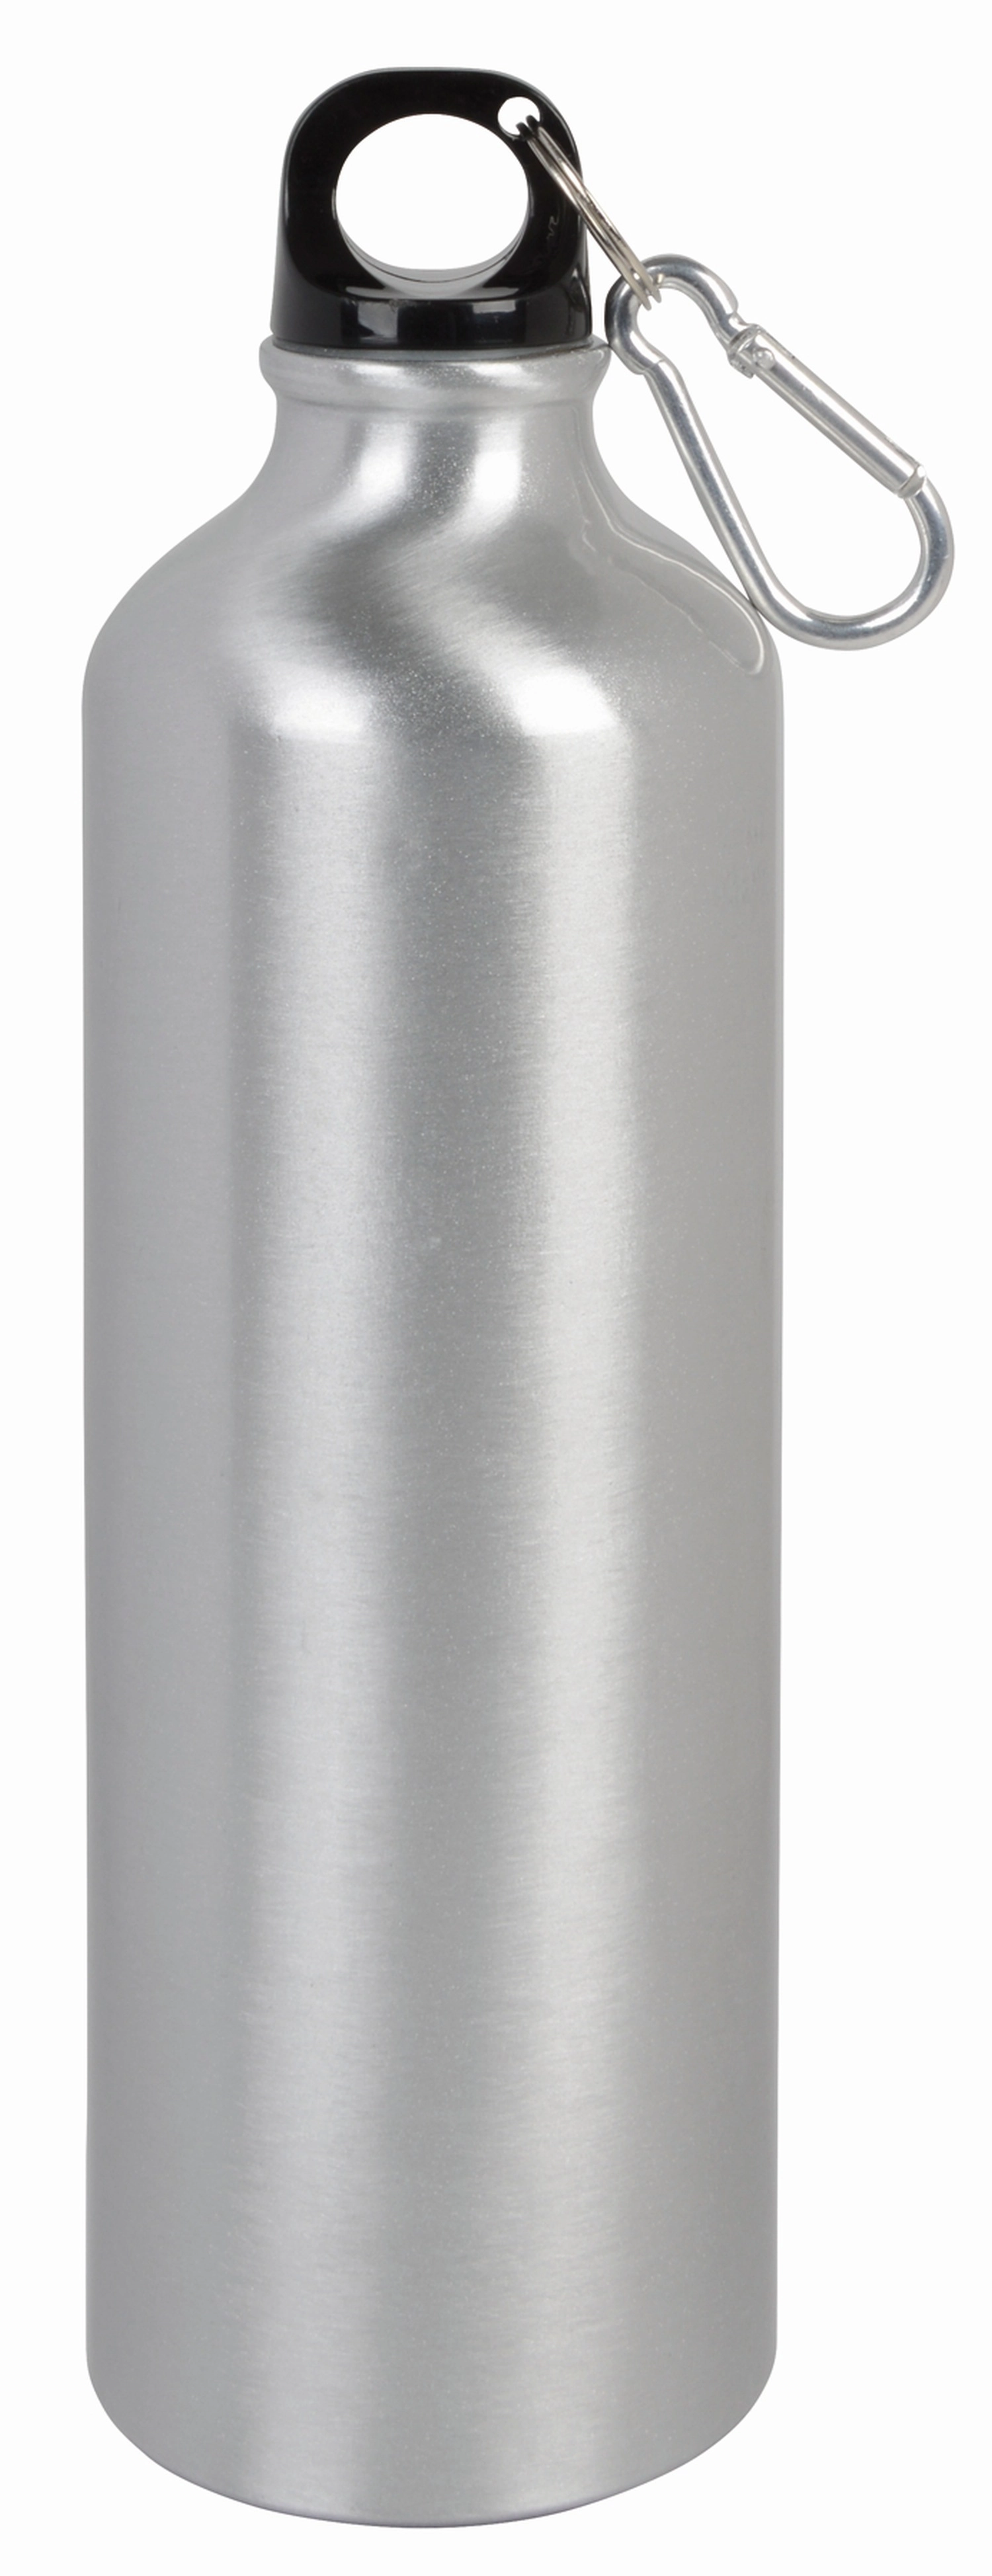 Aluminiowy bidon BIG TRANSIT, srebrny 56-0603132 srebrny
